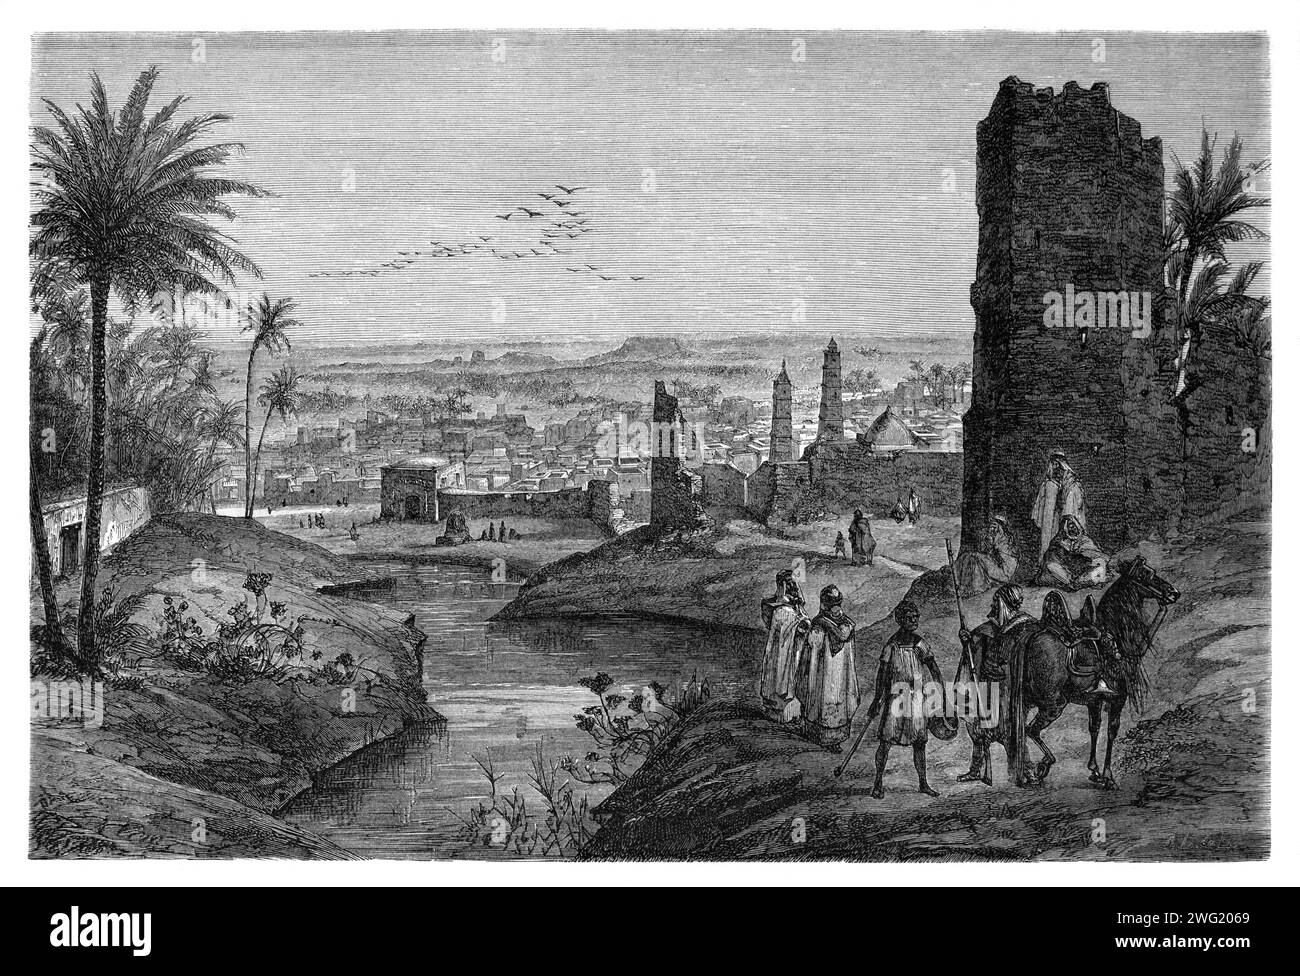 Panorama ou vue panoramique de Ouargla dans le désert du Sahara Algérie. Gravure vintage ou historique ou illustration 1863 Banque D'Images